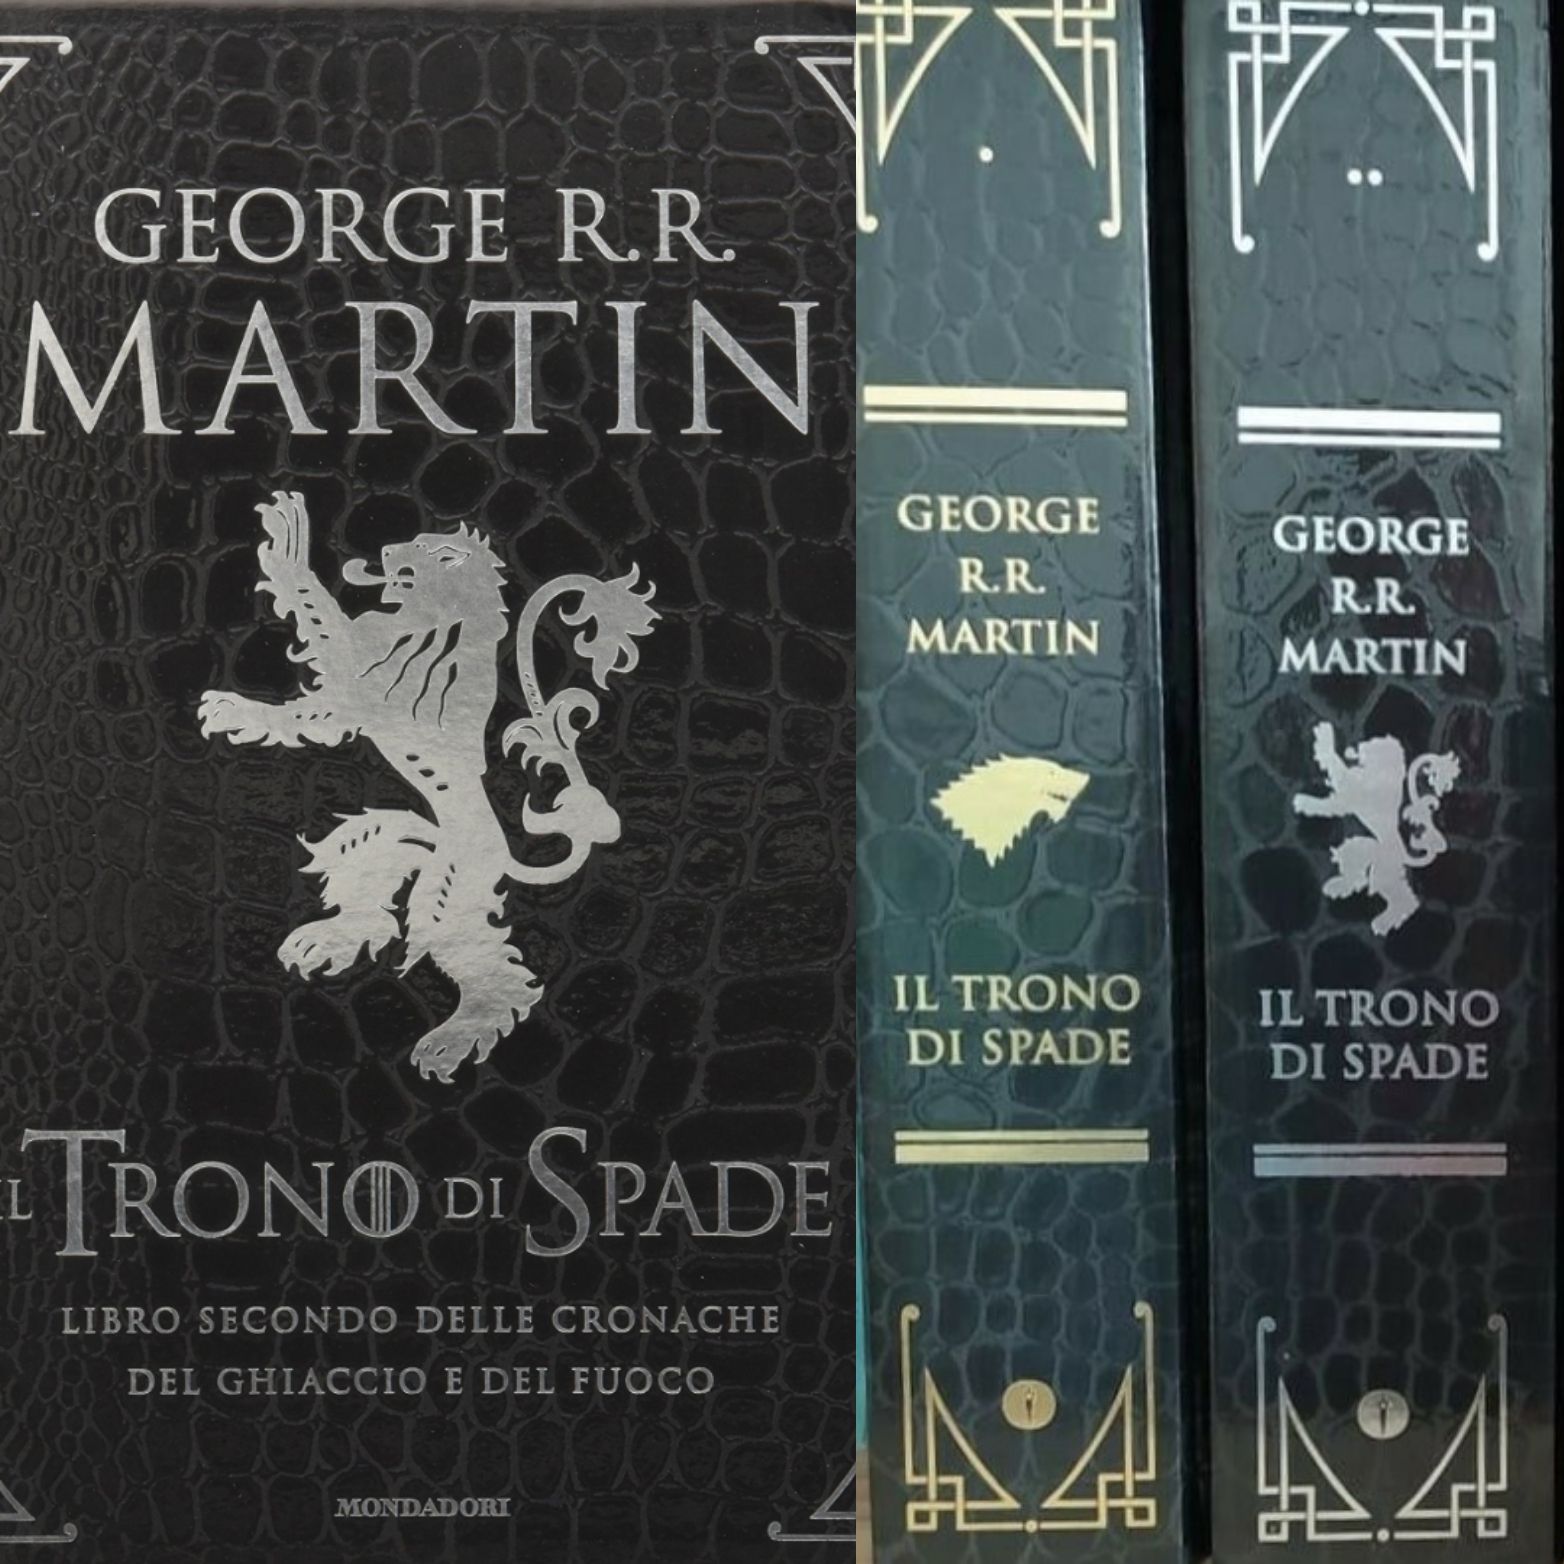 In asta i 5 volumi de “Il Trono di Spade” di George R. R. Martin in Edizione Deluxe